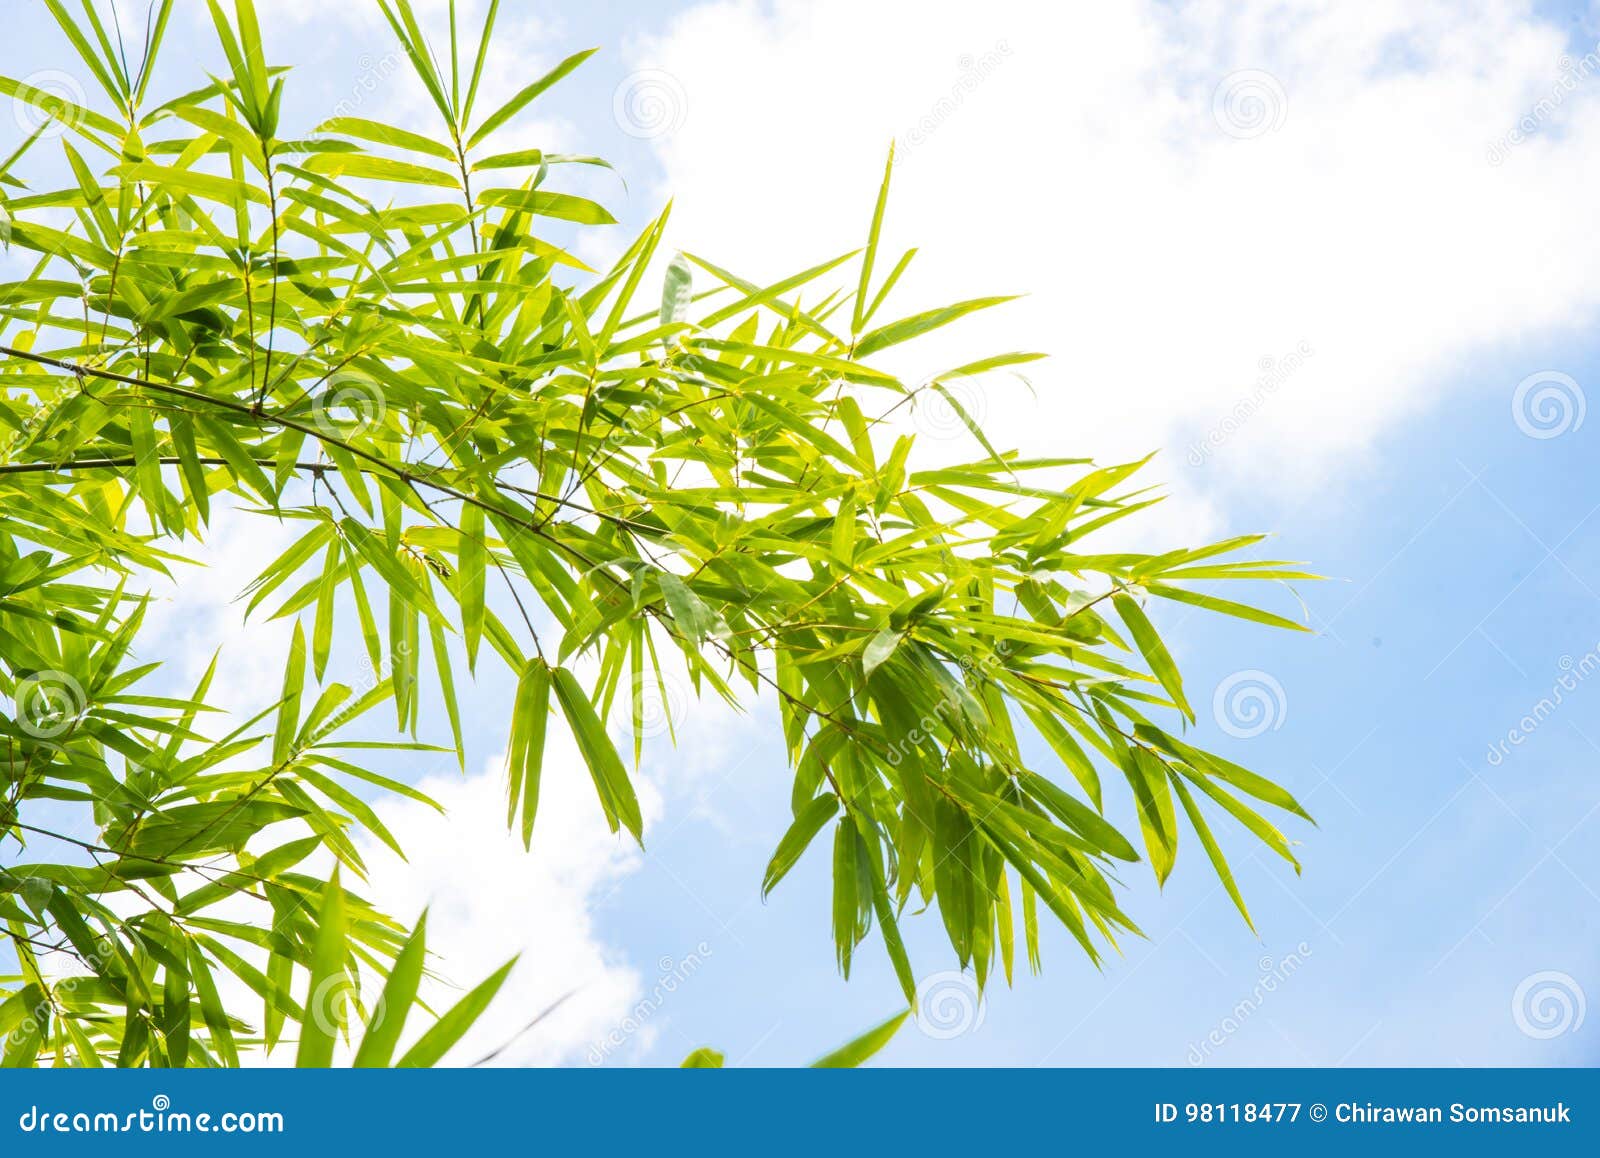 Bamboo leaf background. stock image. Image of chinese - 98118477